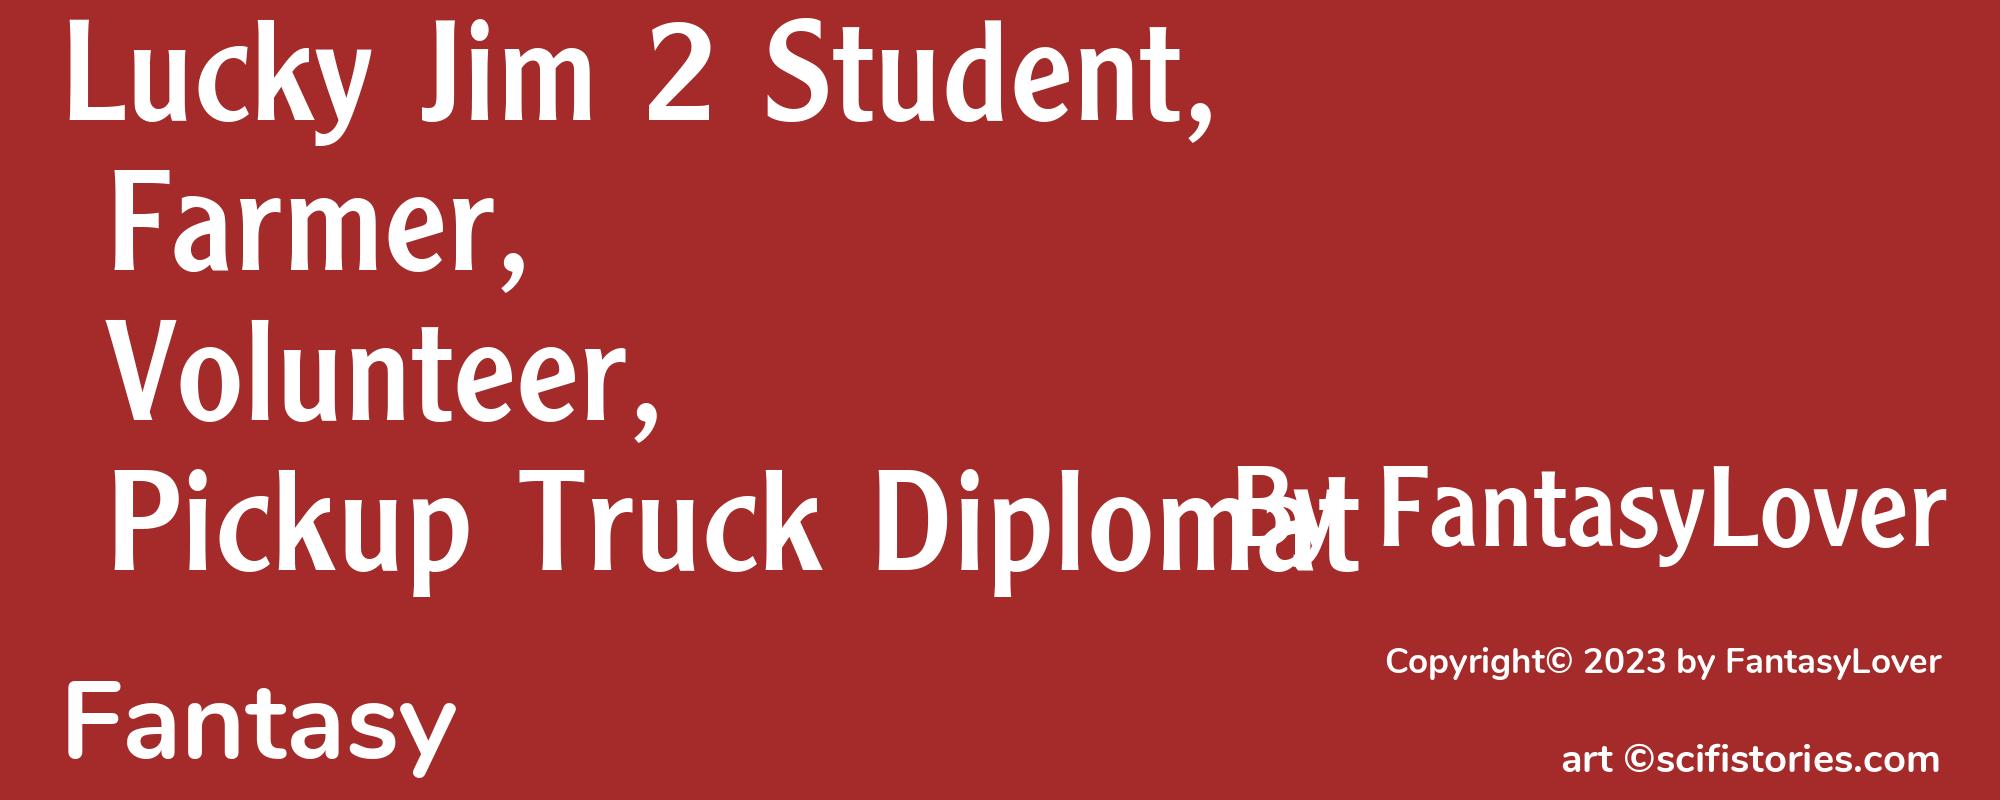 Lucky Jim 2 Student, Farmer, Volunteer, Pickup Truck Diplomat - Cover